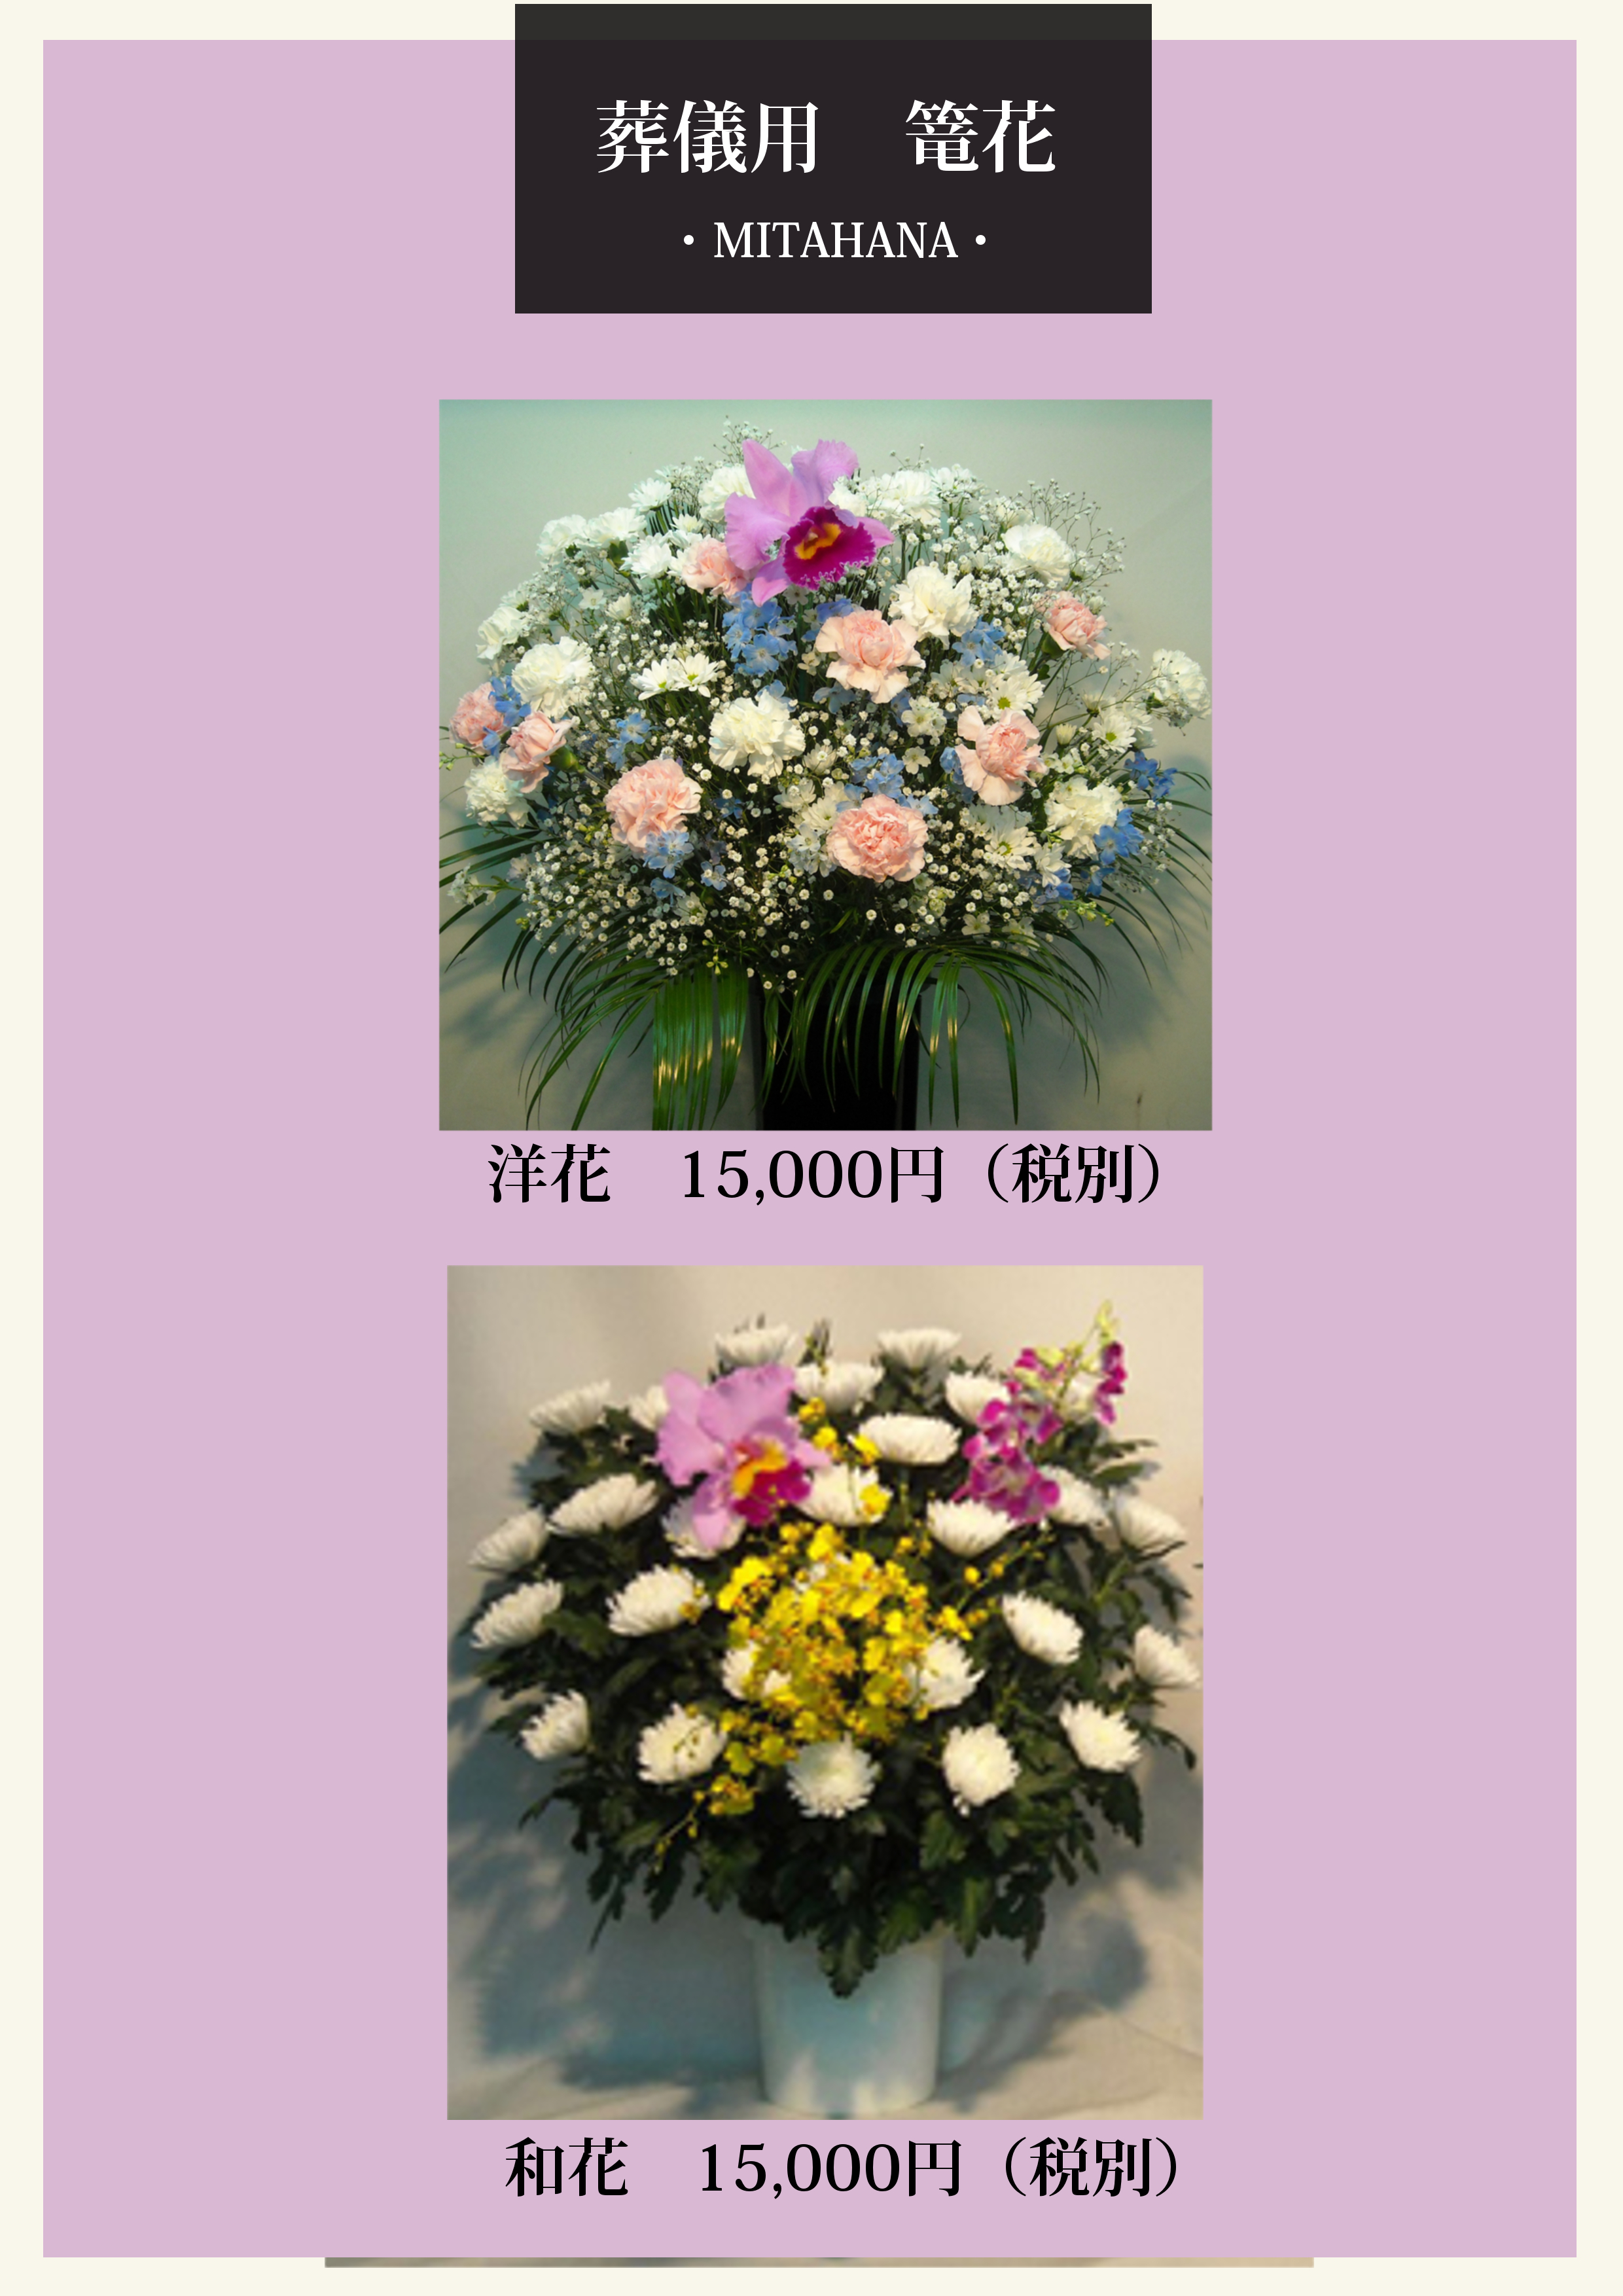 ご葬儀用供花のお見本画像を掲載いたしました。